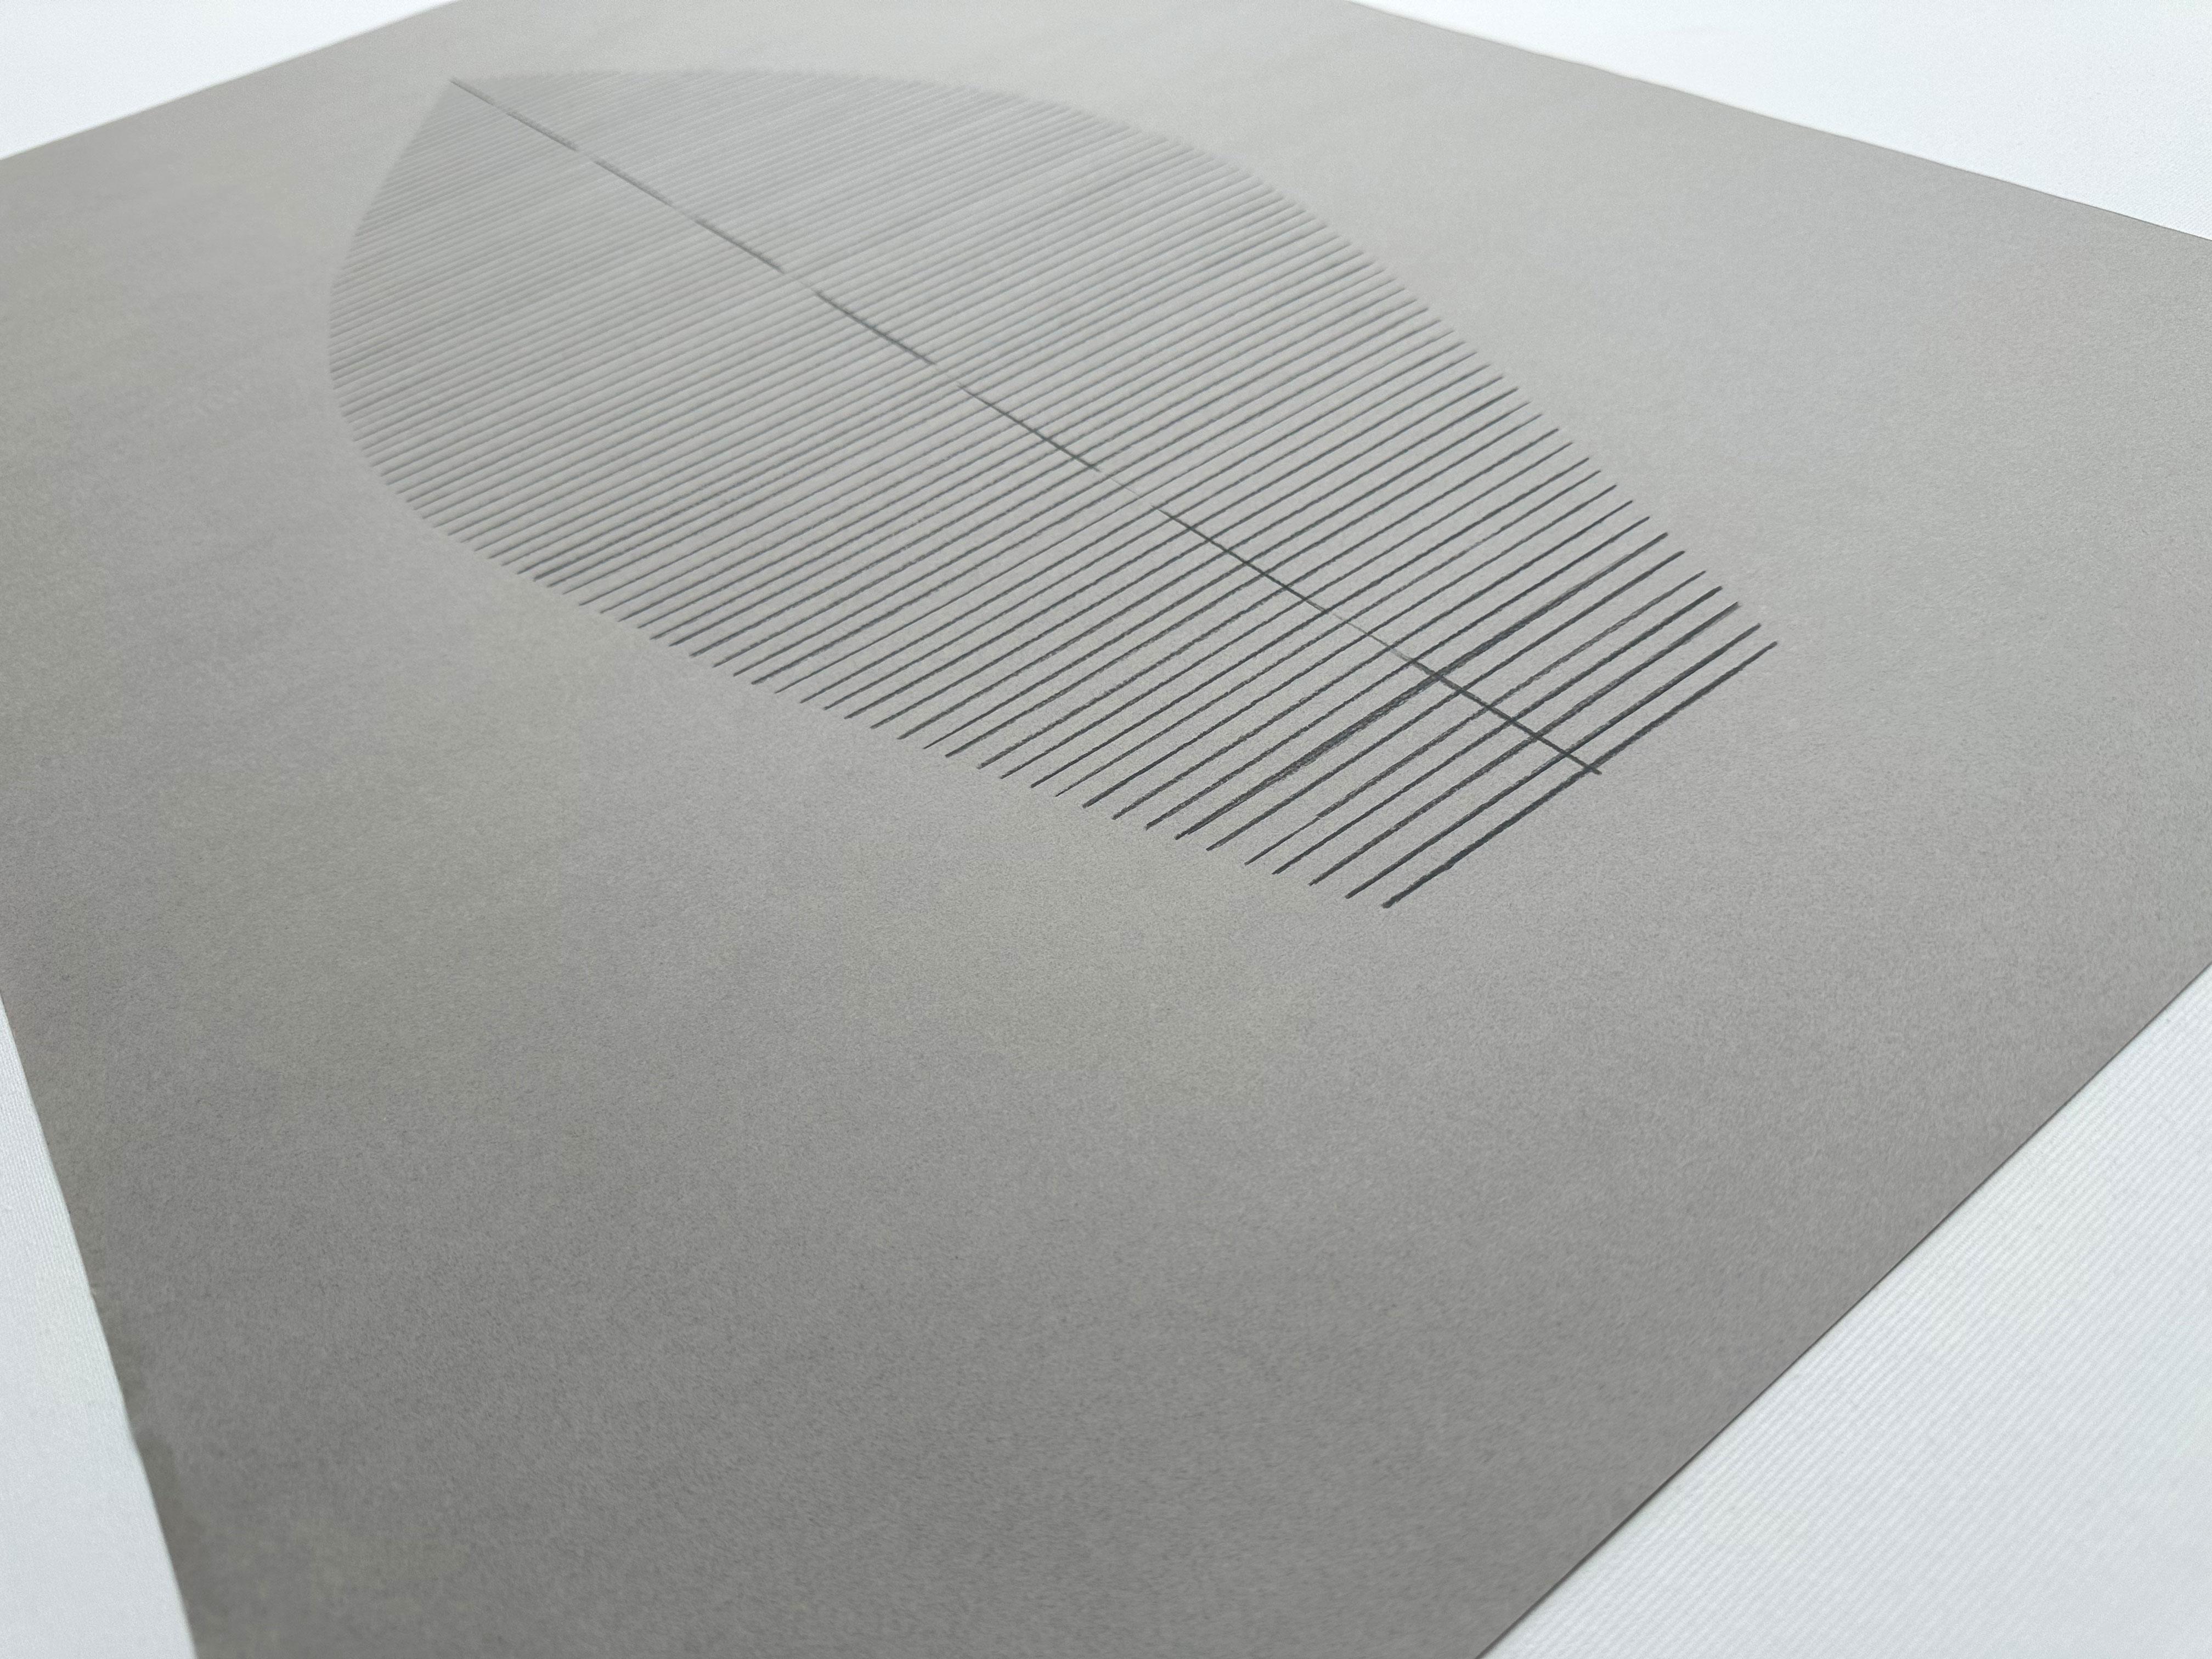 „Gore Dark Warm Grey“ Buntstift auf Papier, organische, neutrale Linien, op (Grau), Abstract Drawing, von Amanda Andersen